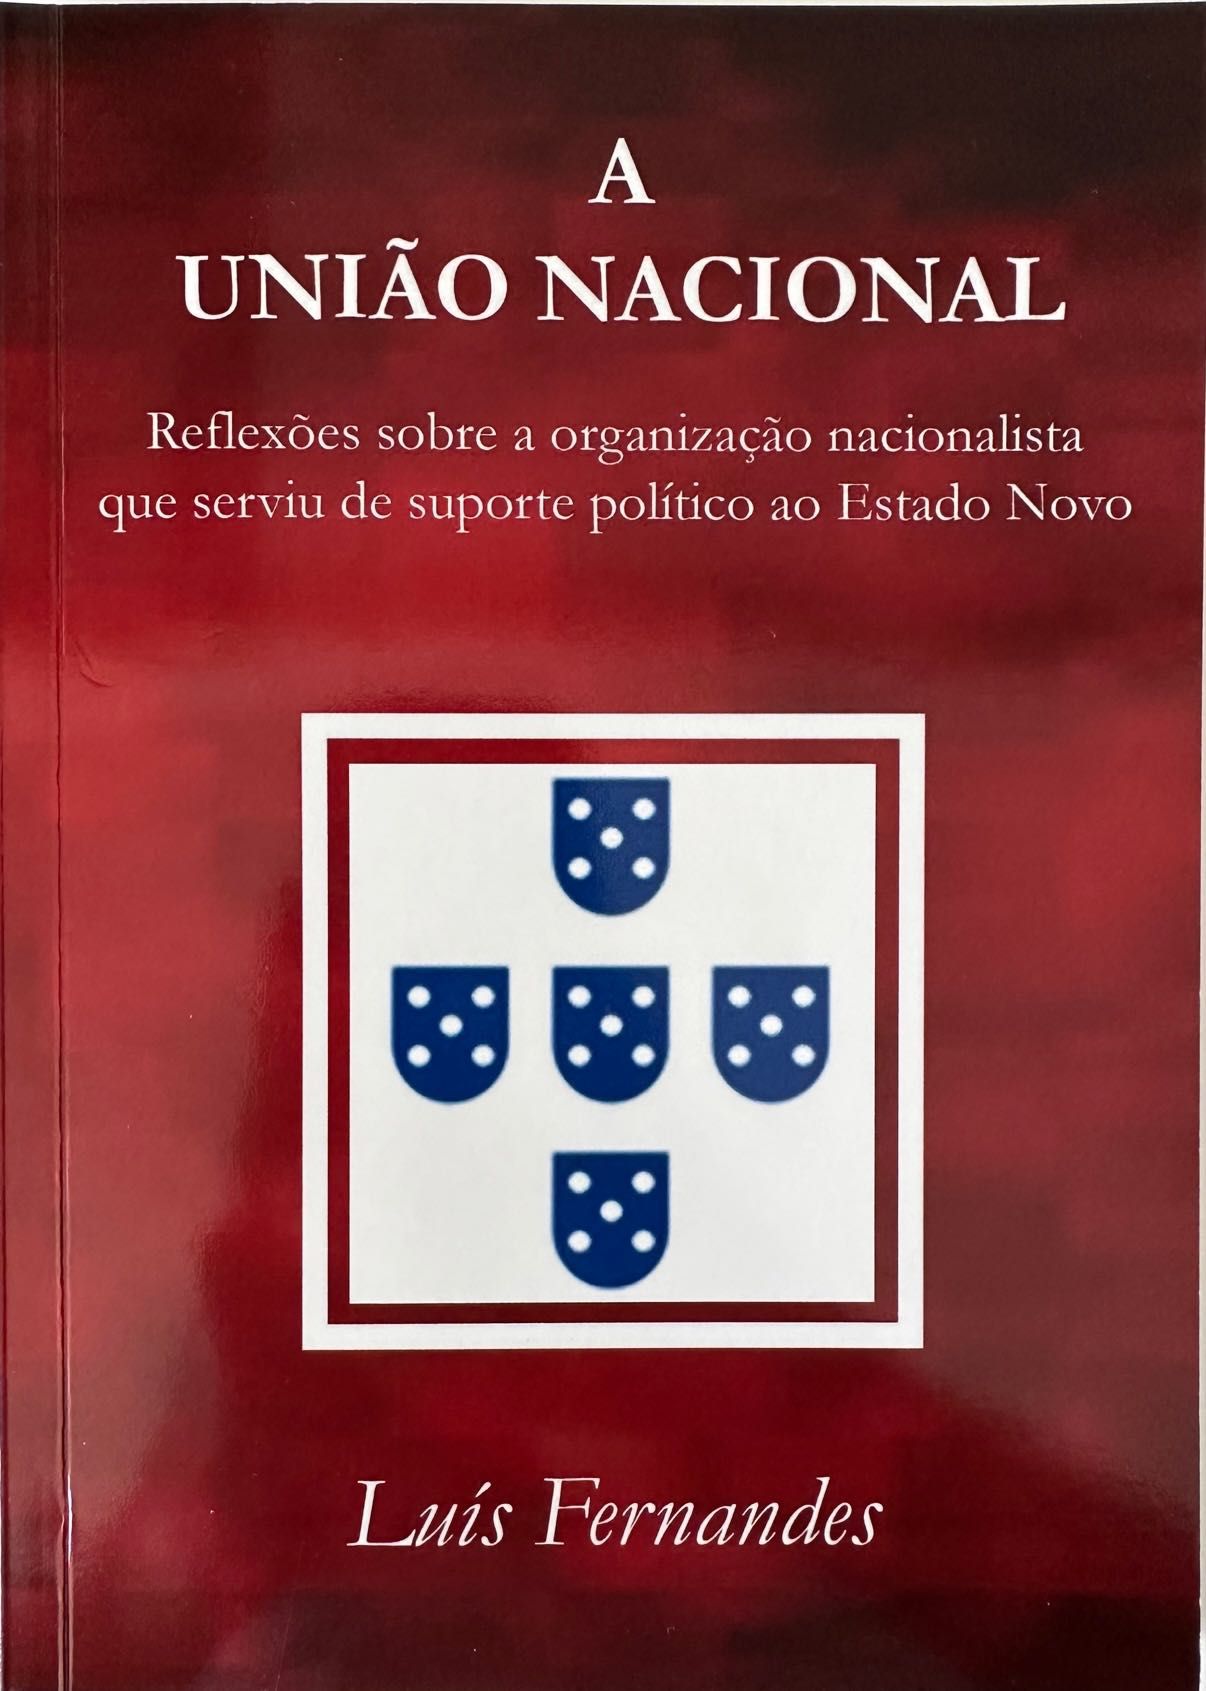 A União Nacional - Luís Fernandes - 2018